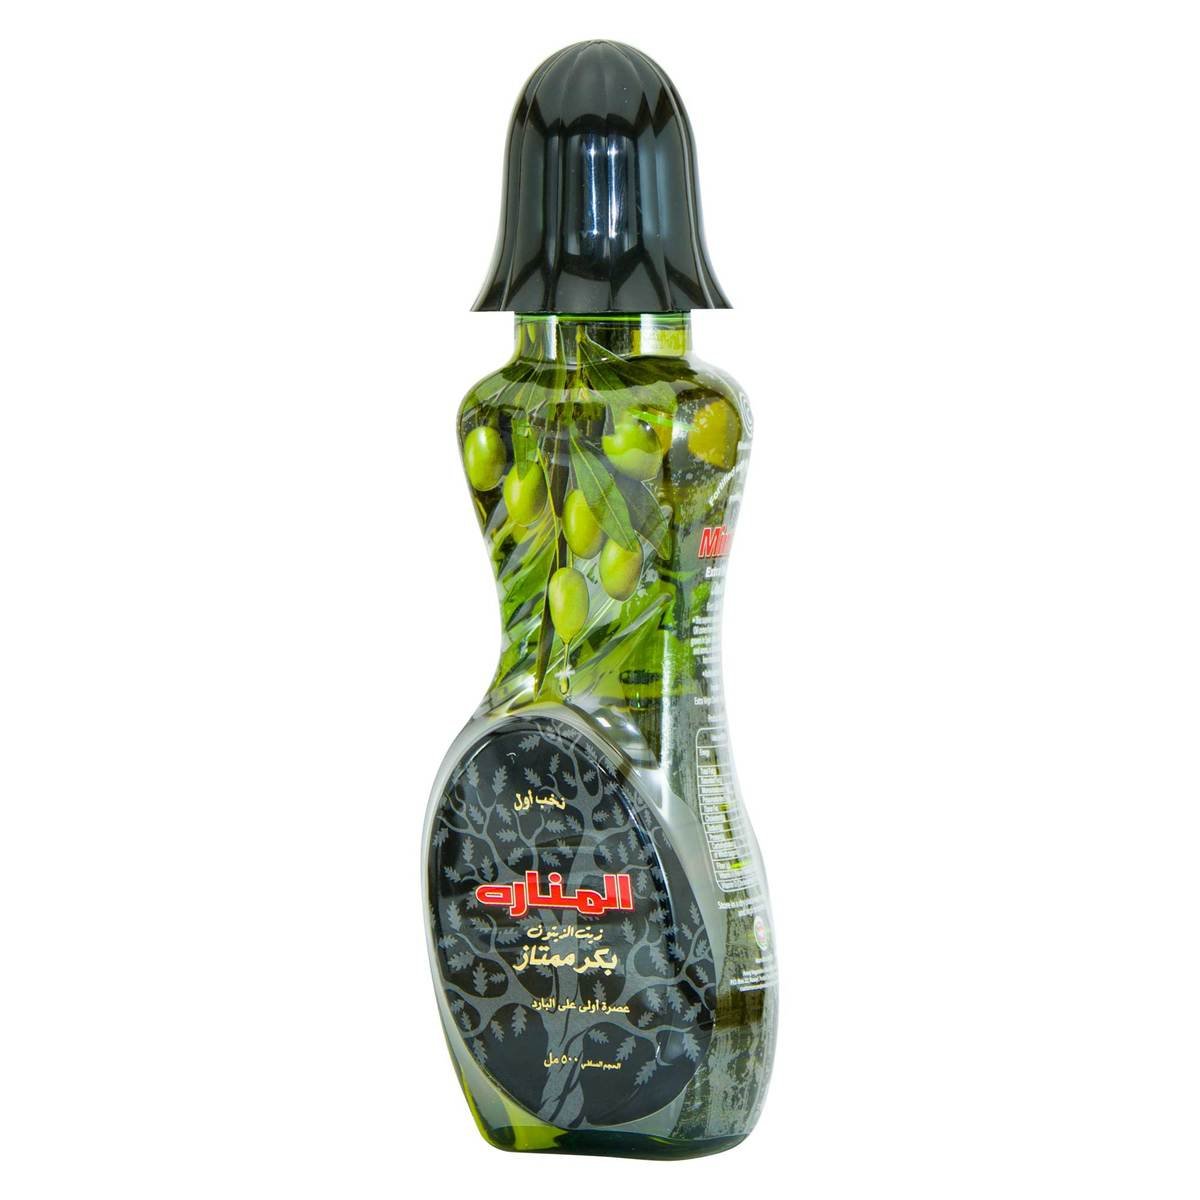 Minara Extra Virgin Olive Oil 500ml